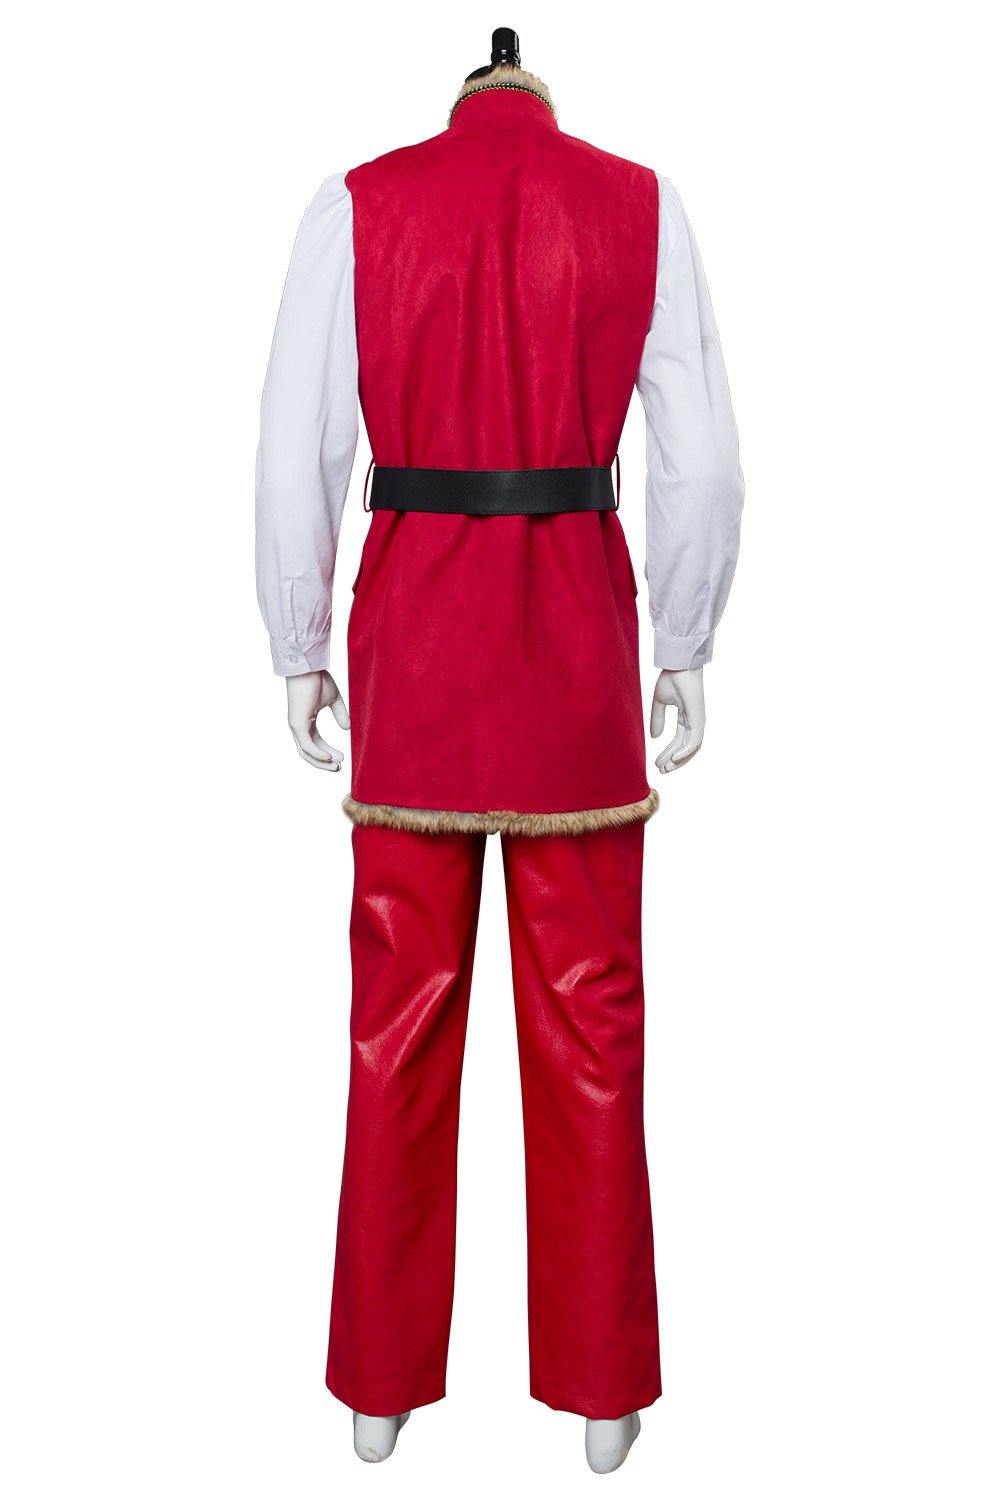 The Christmas Chronicles Santa Claus Weihnachtsmann Weihnachten Cosplay Kostüm - cosplaycartde